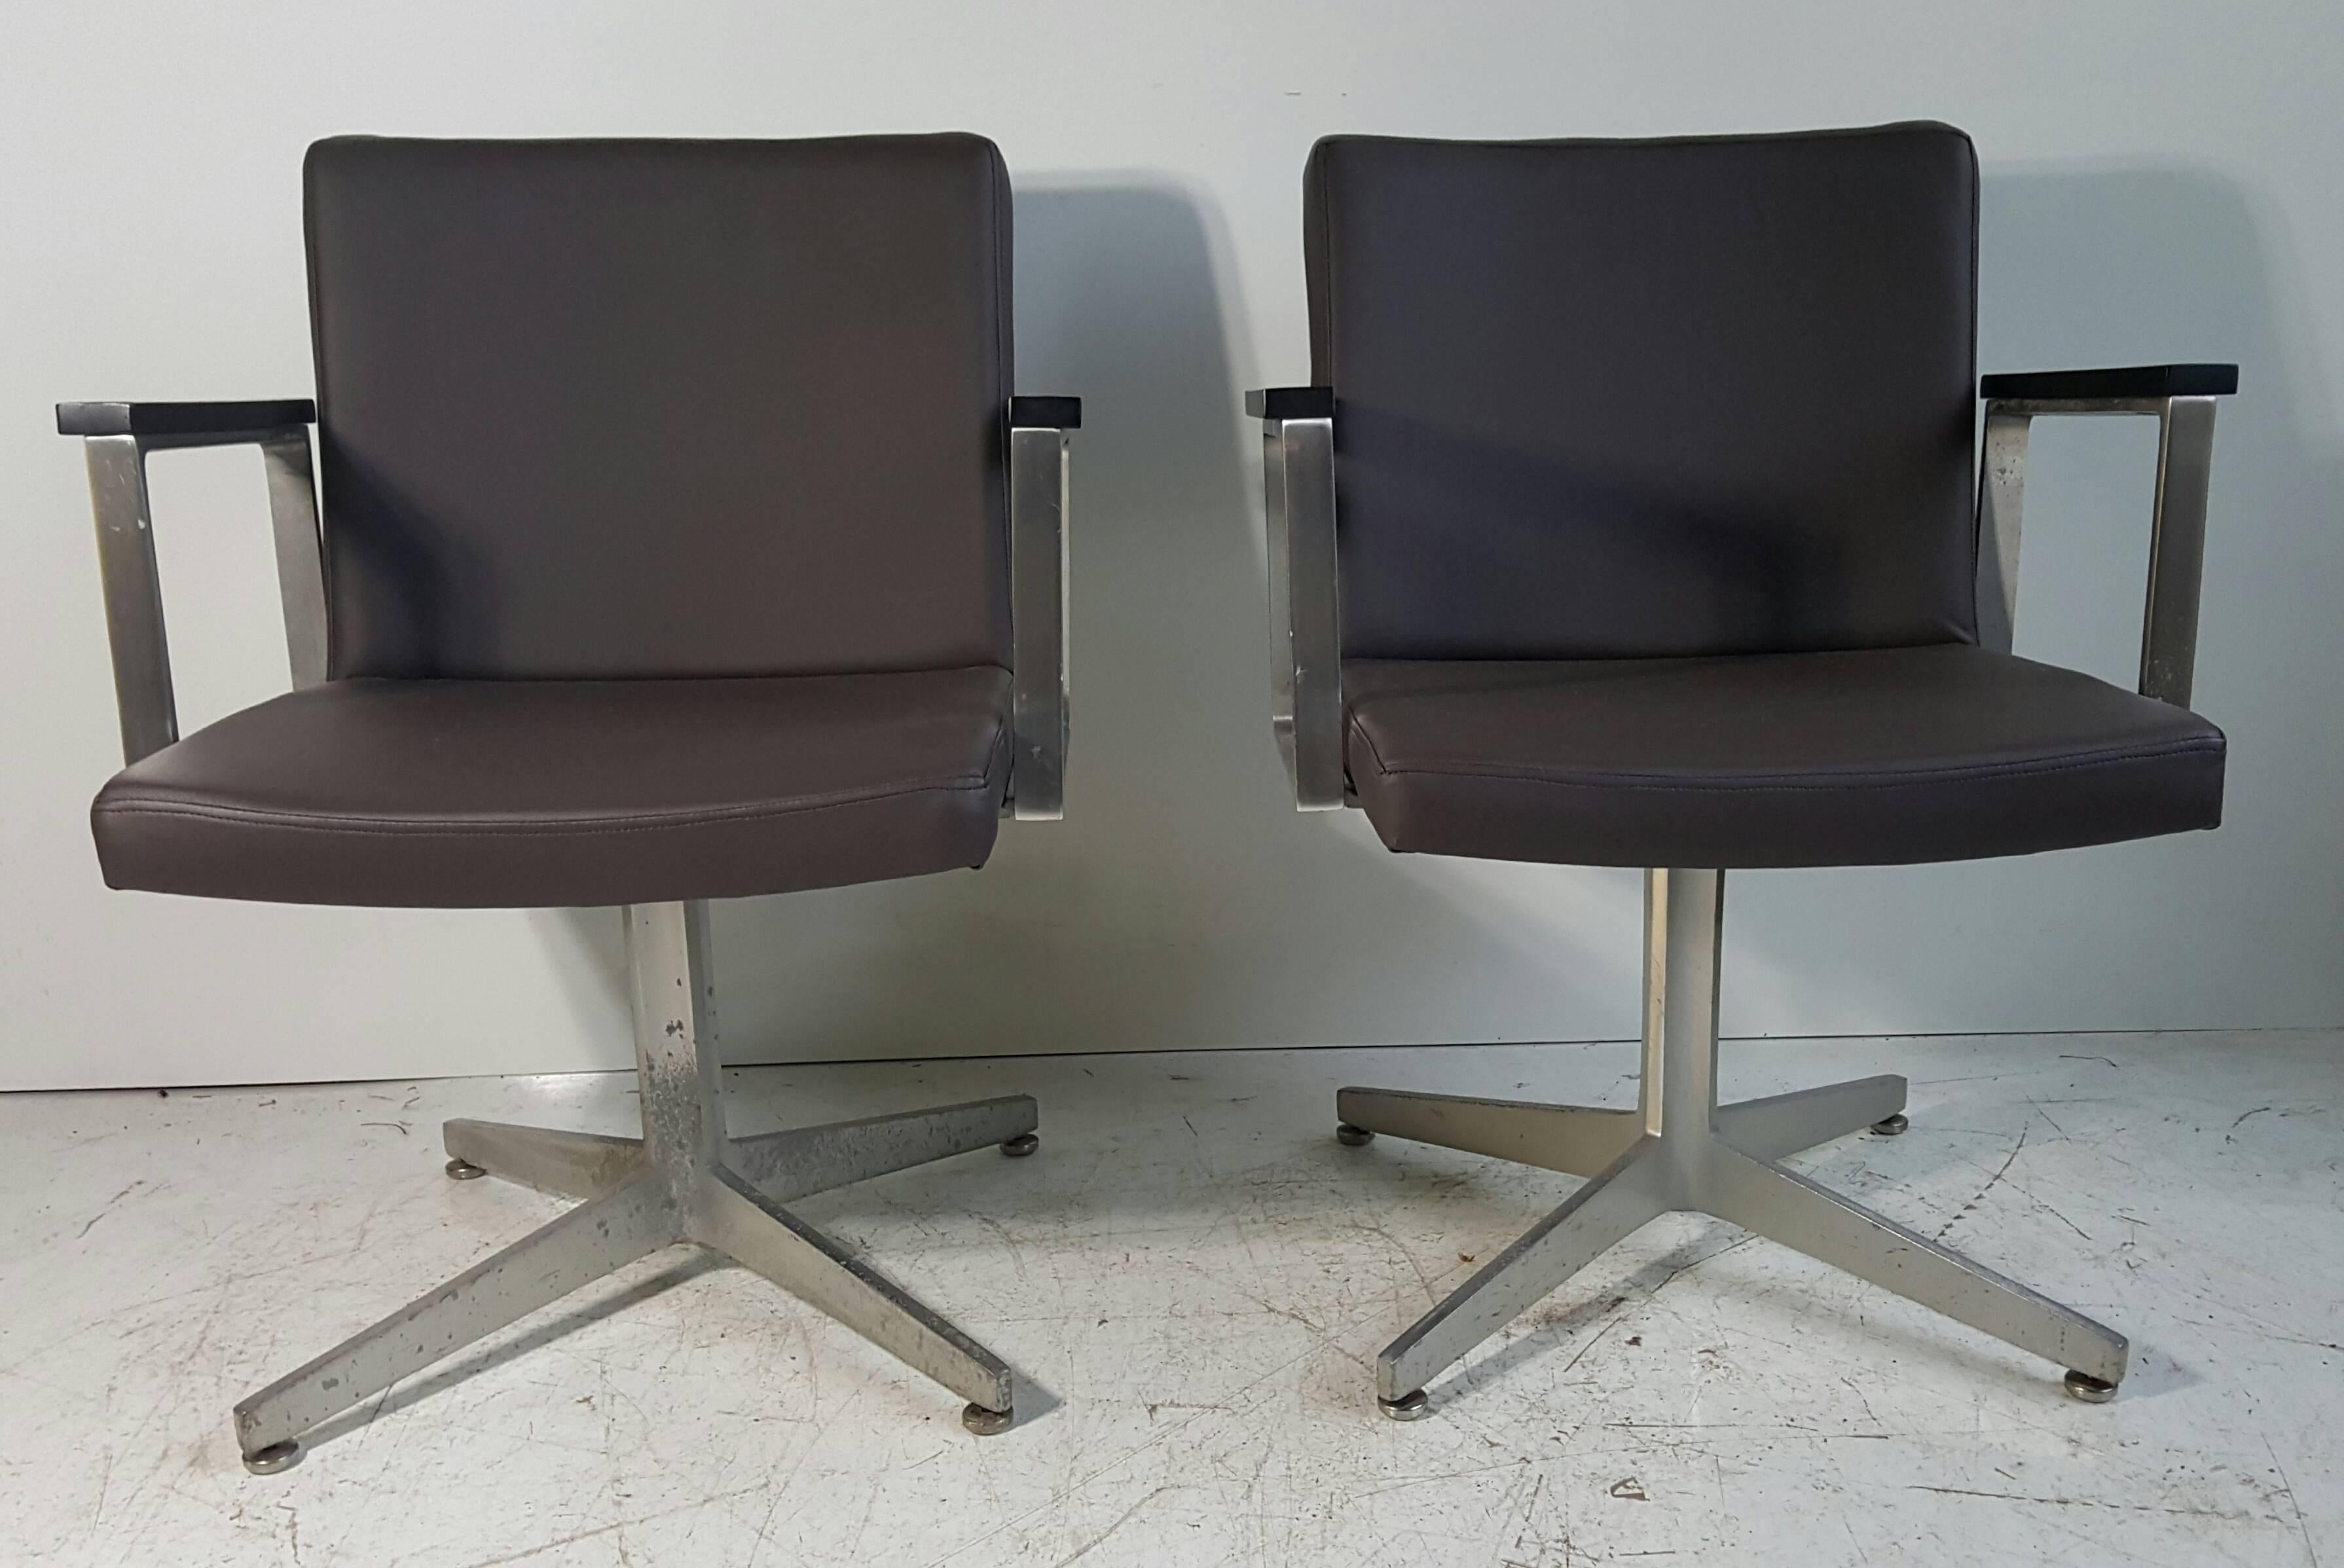 Paire classique de fauteuils modernistes en aluminium et cuir fabriqués par Good Form, récemment retapissés en cuir brun chocolat.